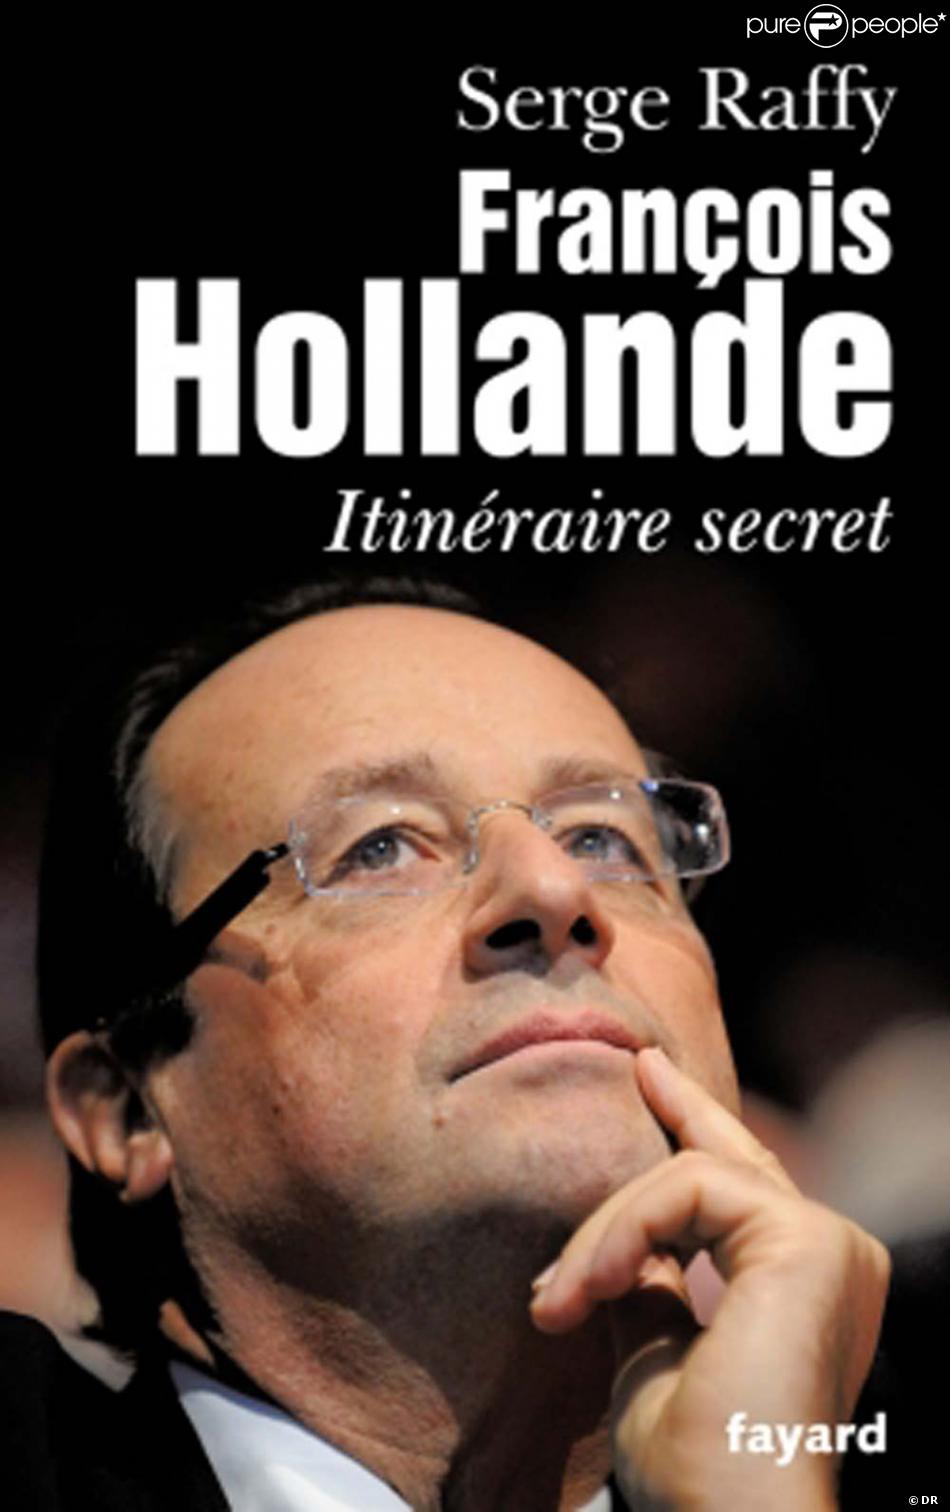  François Hollande, itinéraire secret  de Serge Raffy, le 7 septembre aux éditions Fayard.